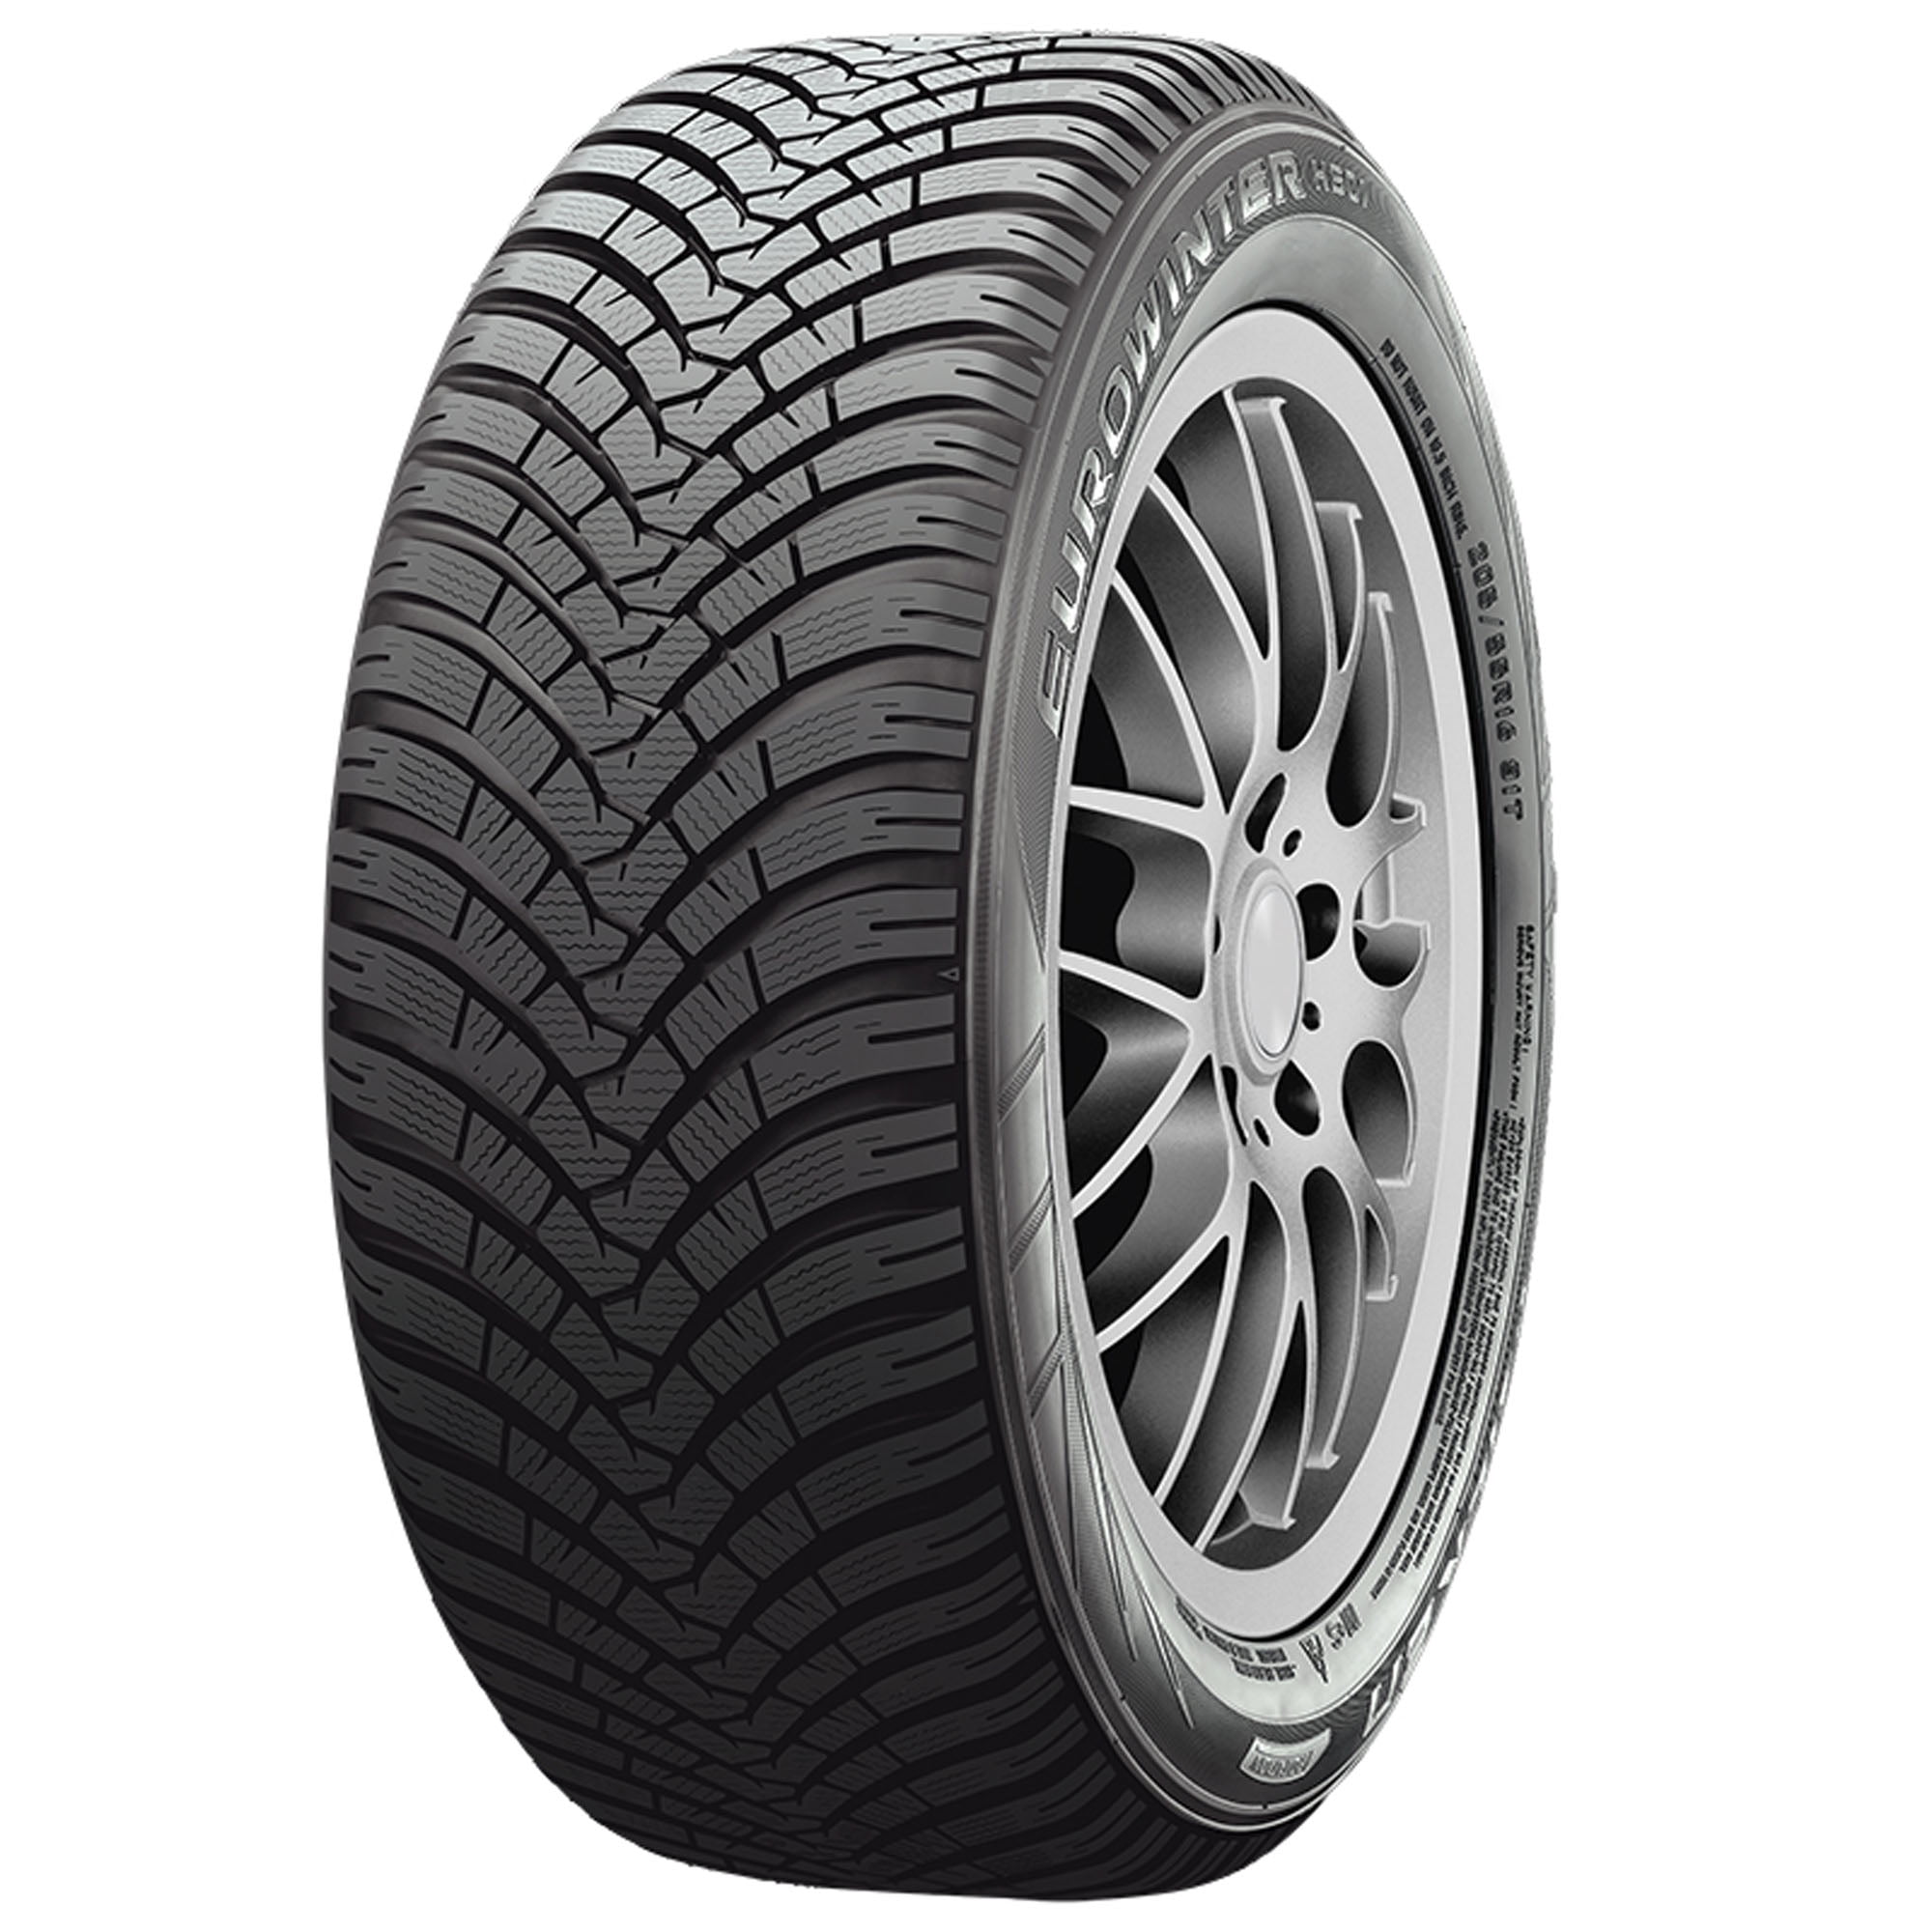 Falken Eurowinter HS01 245/45R19XL 102V BW Winter Studless Tire